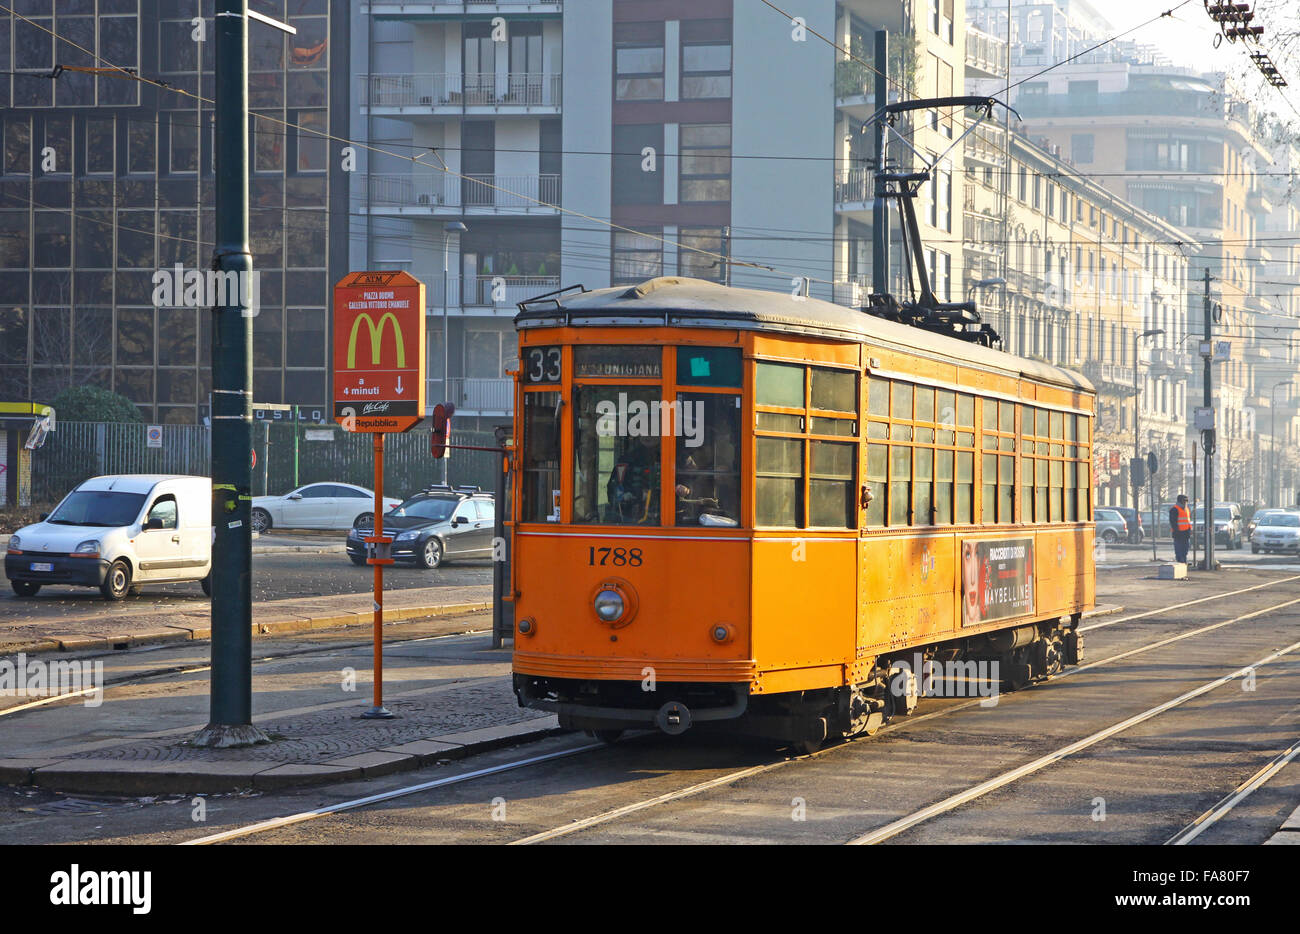 MILAN, ITALY - DECEMBER 31, 2010: Old traditional orange tram (Peter Witt streetcar) on the street of Milan. Milan tramway netwo Stock Photo